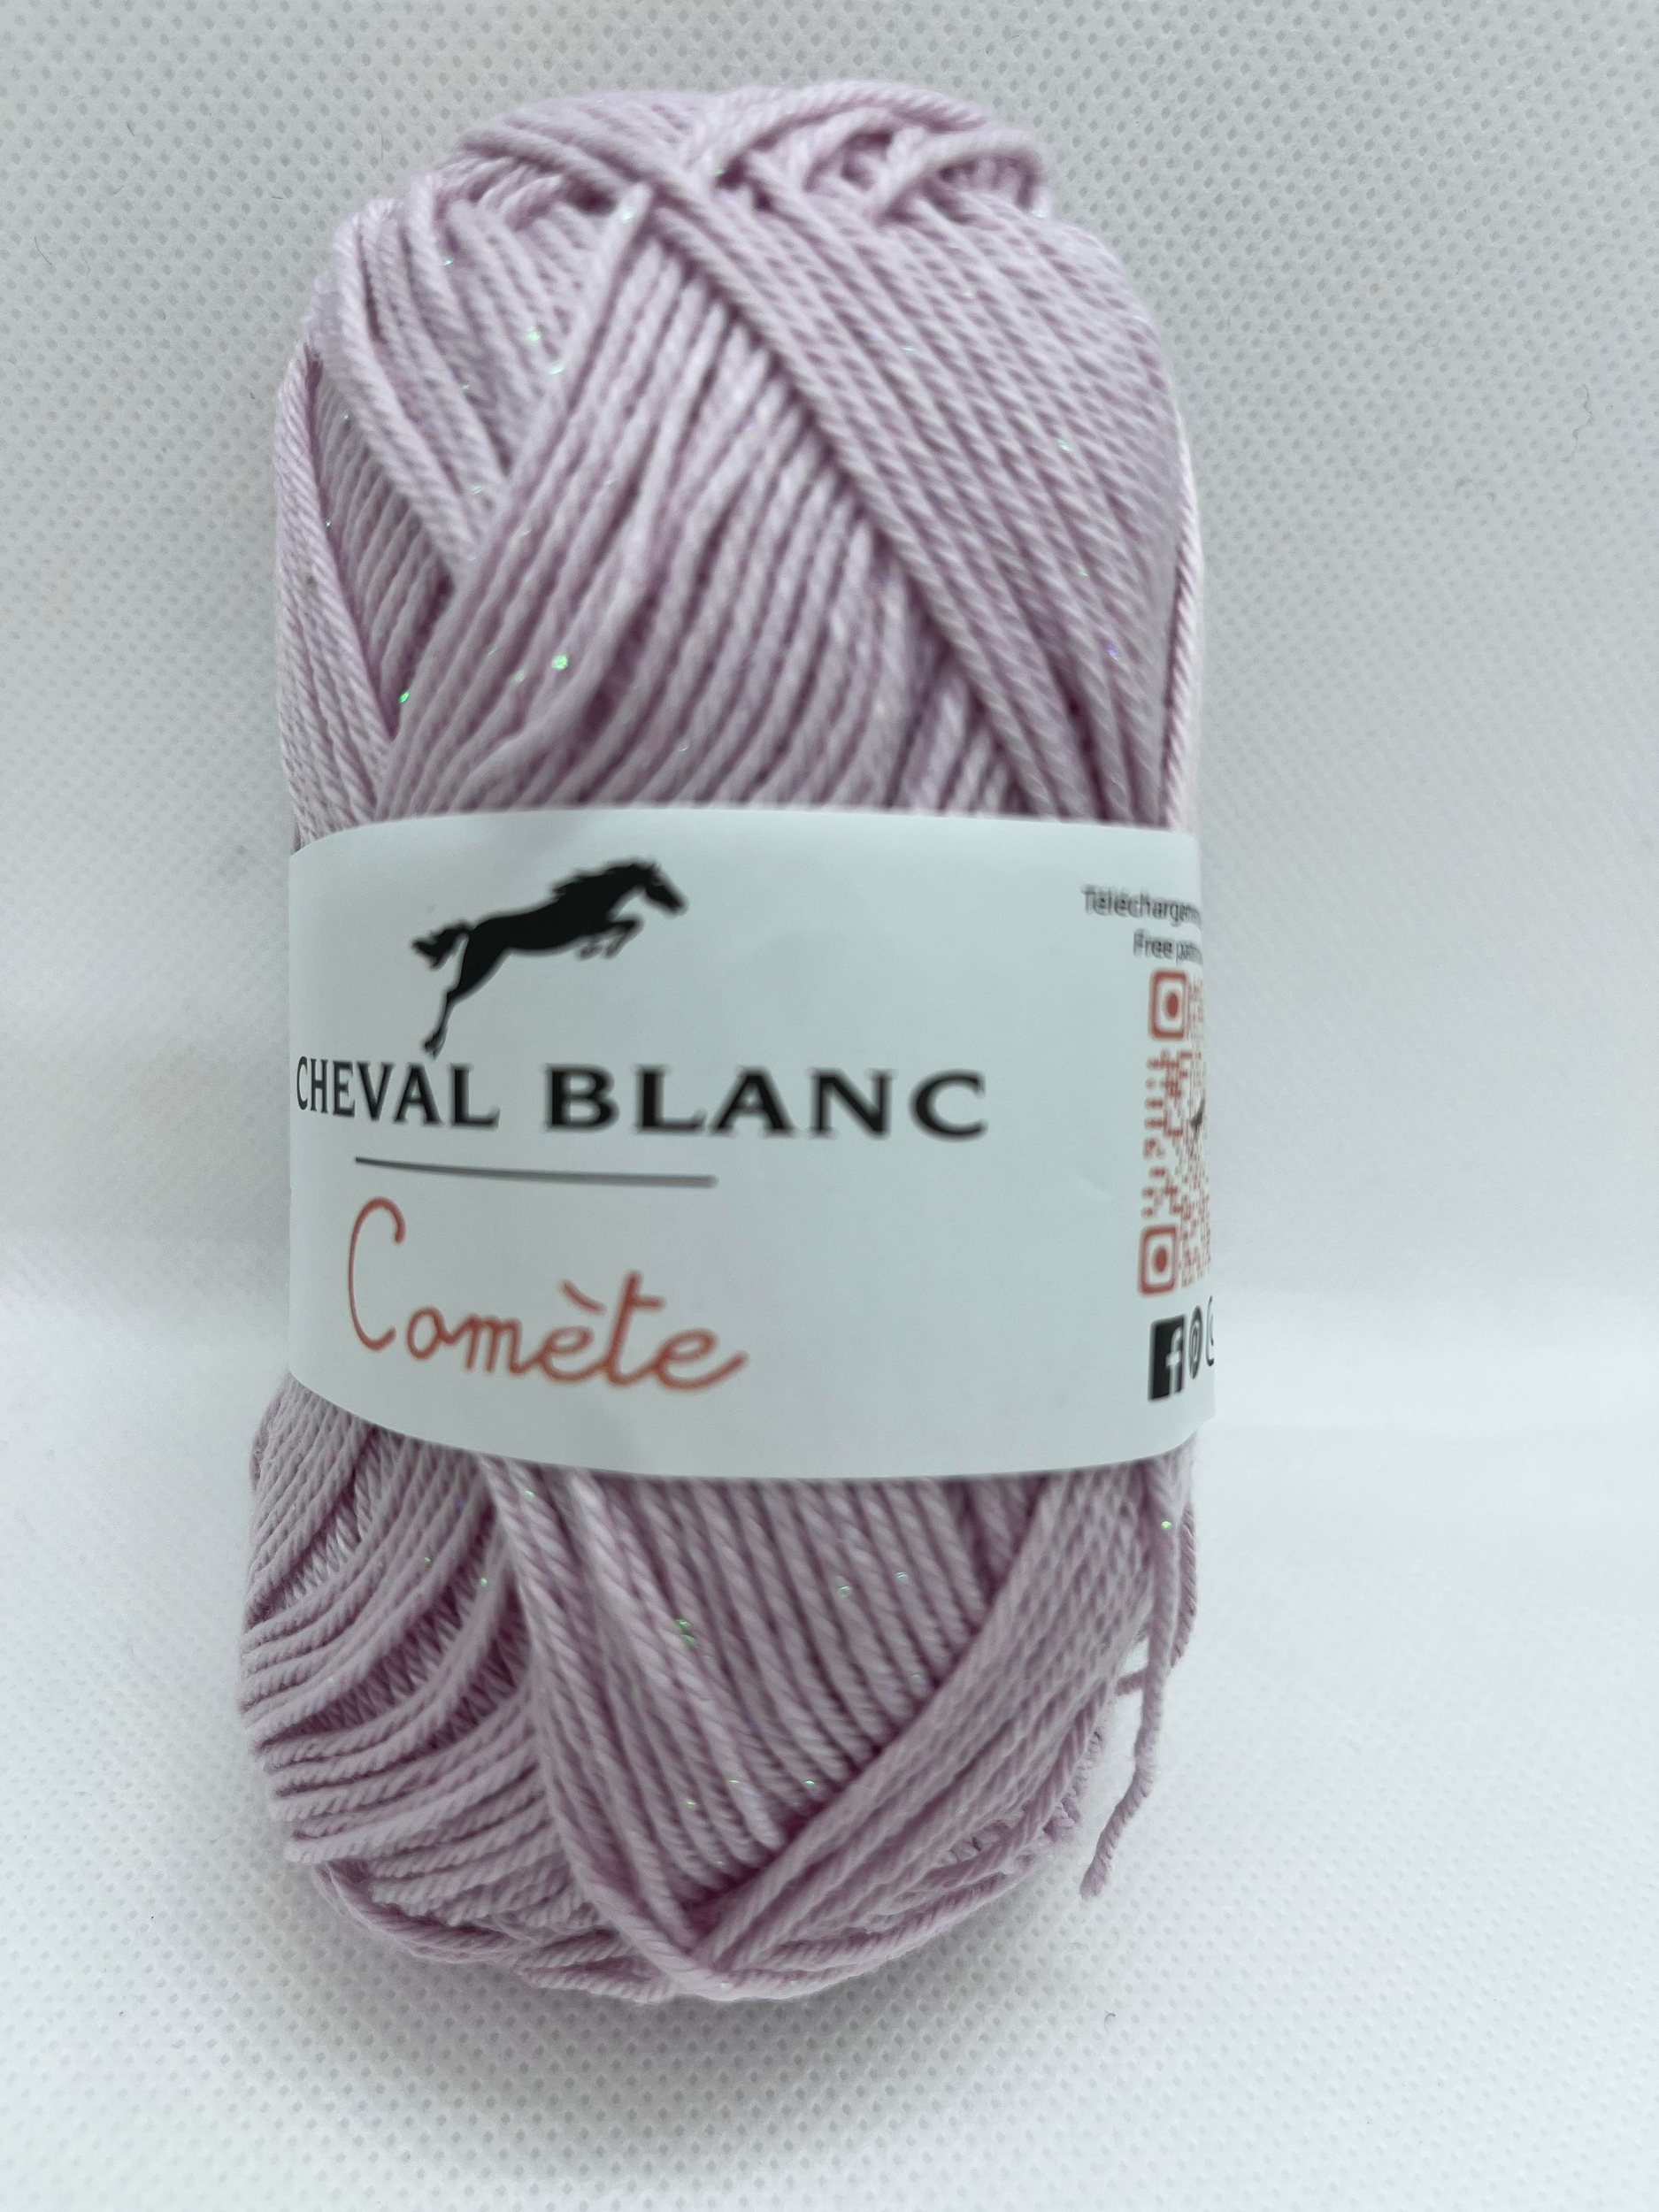 Laines Cheval Blanc - SALSA JACQUARD pelote de fil à tricoter été